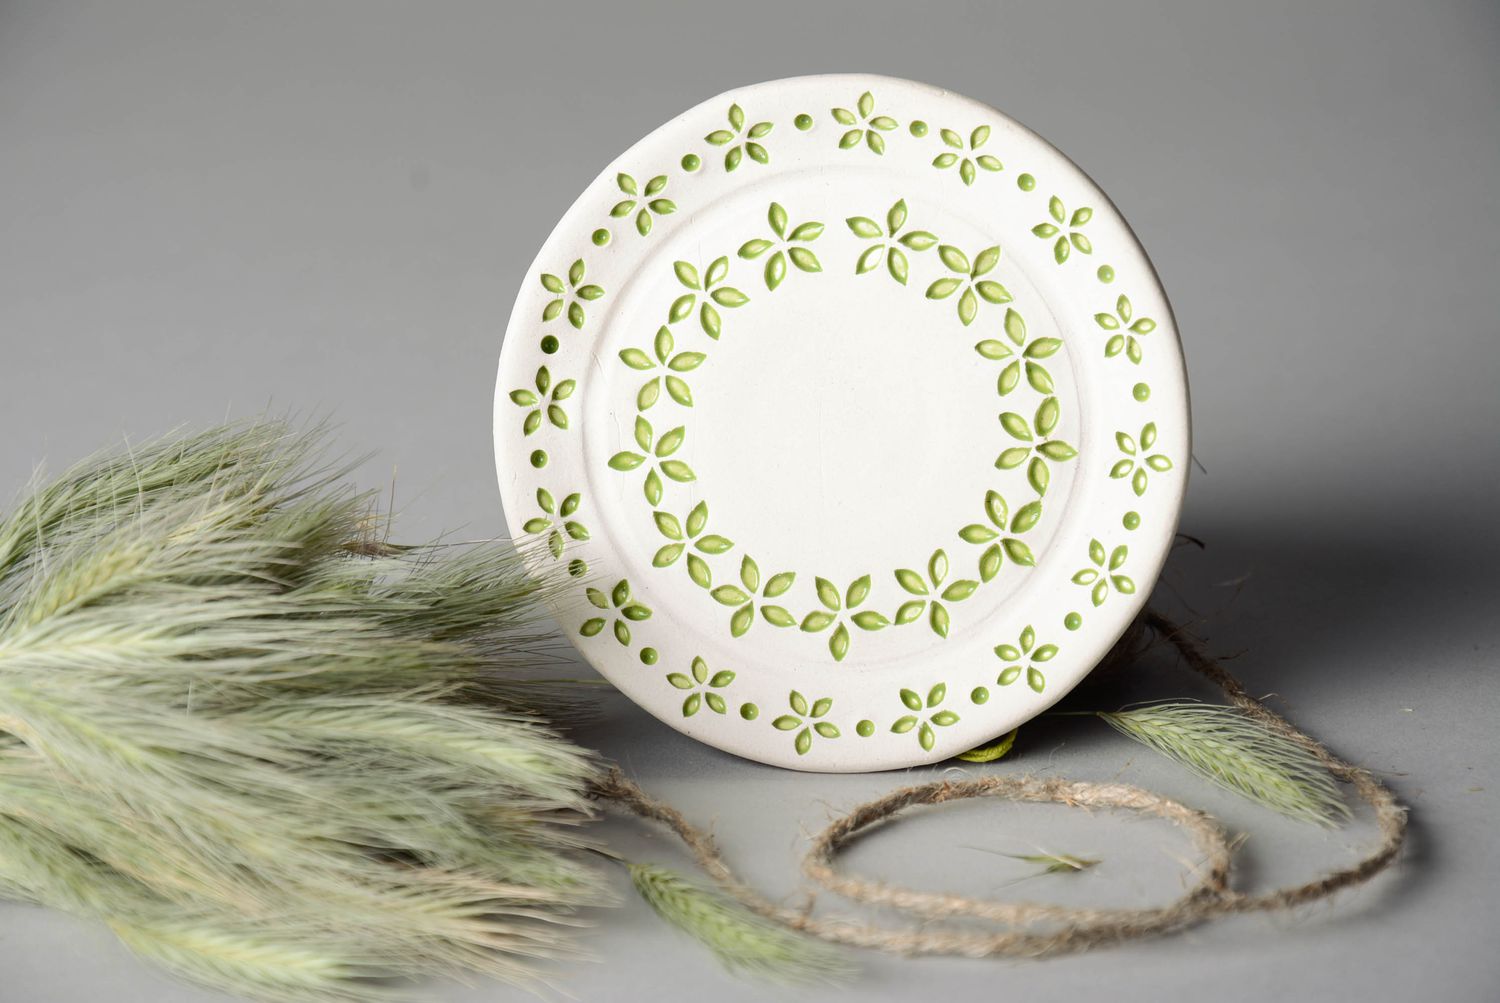 Декоративная тарелочка с салатовыми цветочками фото 1